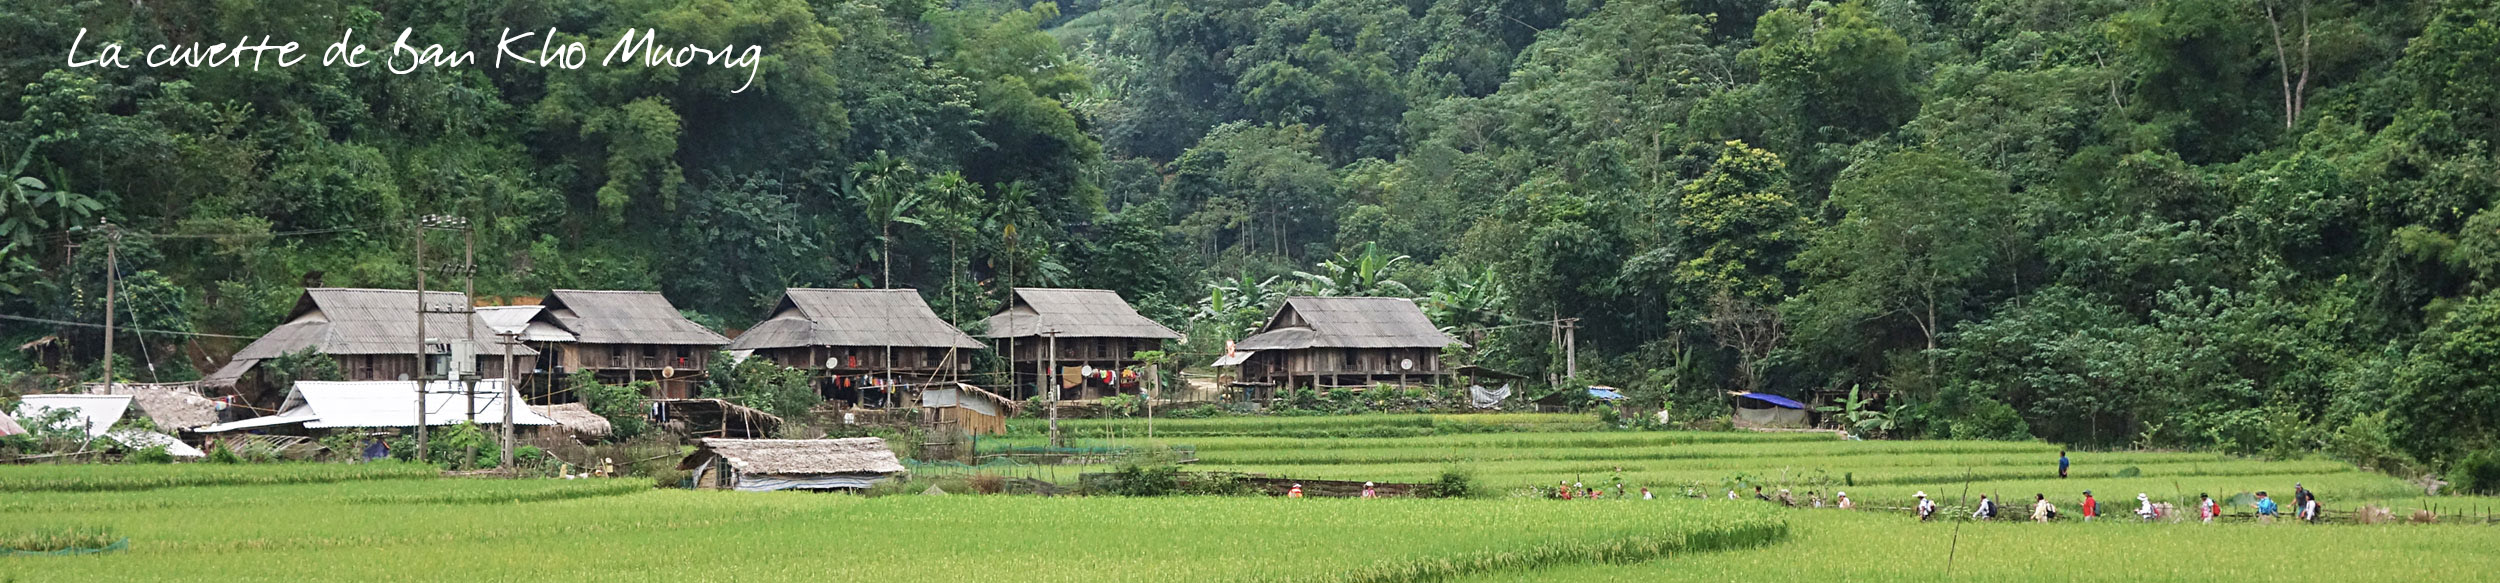 Village de Ban Kho Muong lors d'un trek dans la réserve de Pu Luong au Vietnam